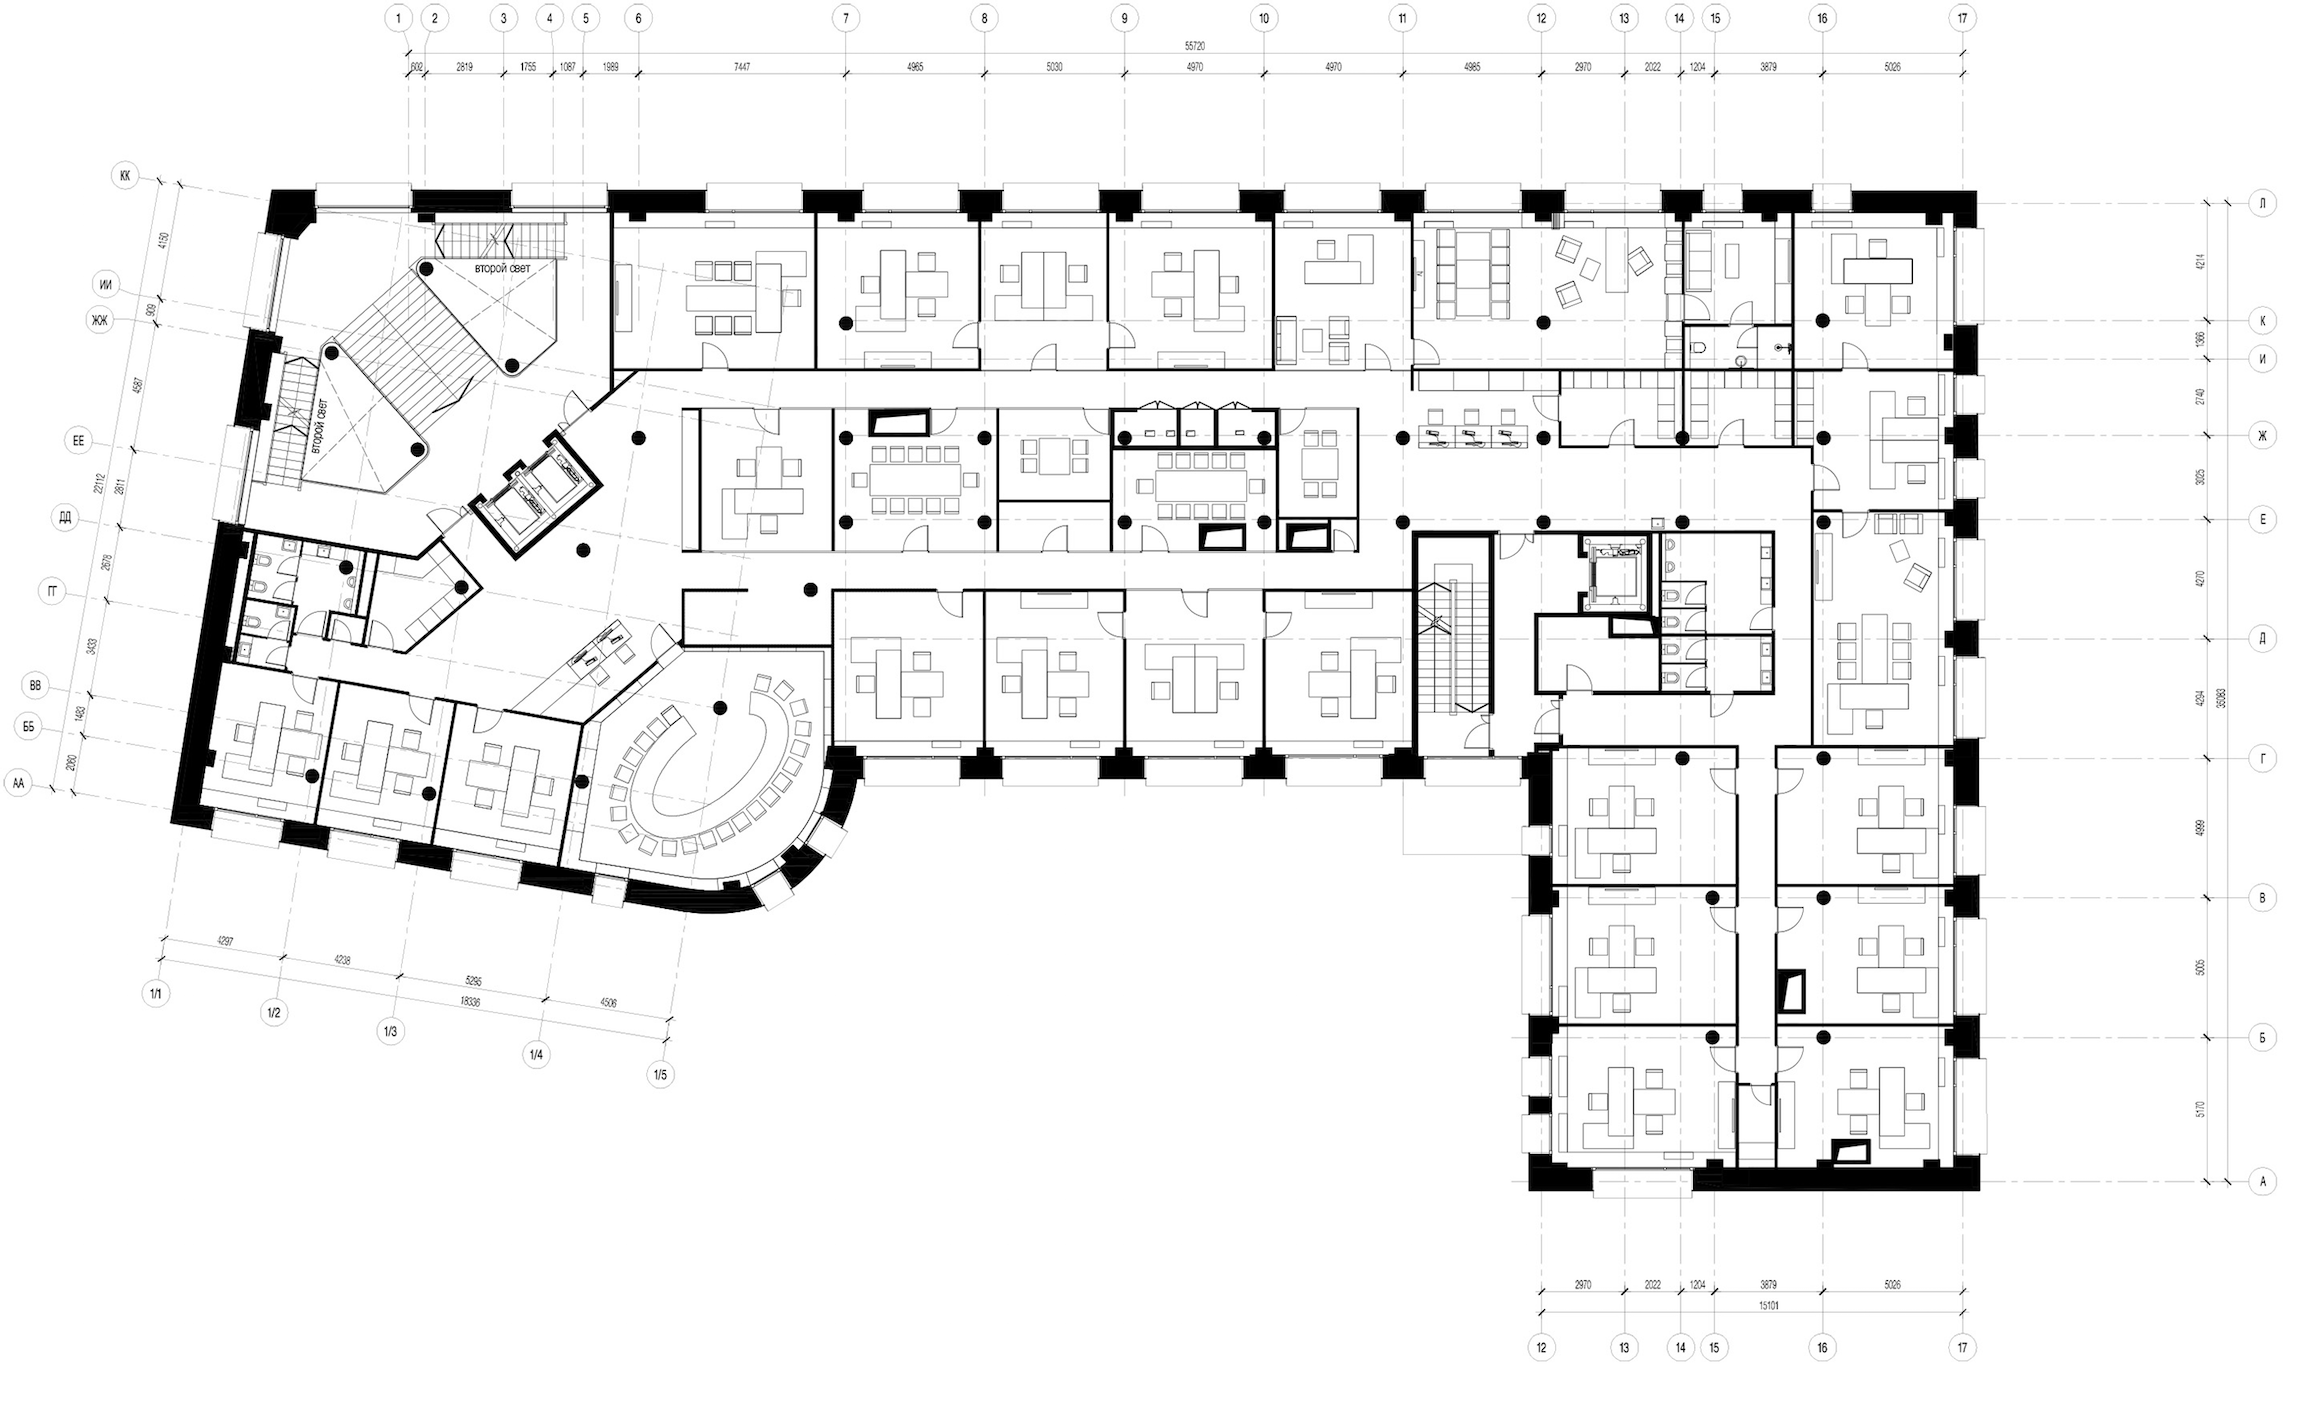 Размеры офисного здания. План офисного здания. План офисного центра. План первого этажа офисного здания. План административного здания 1 этажа.